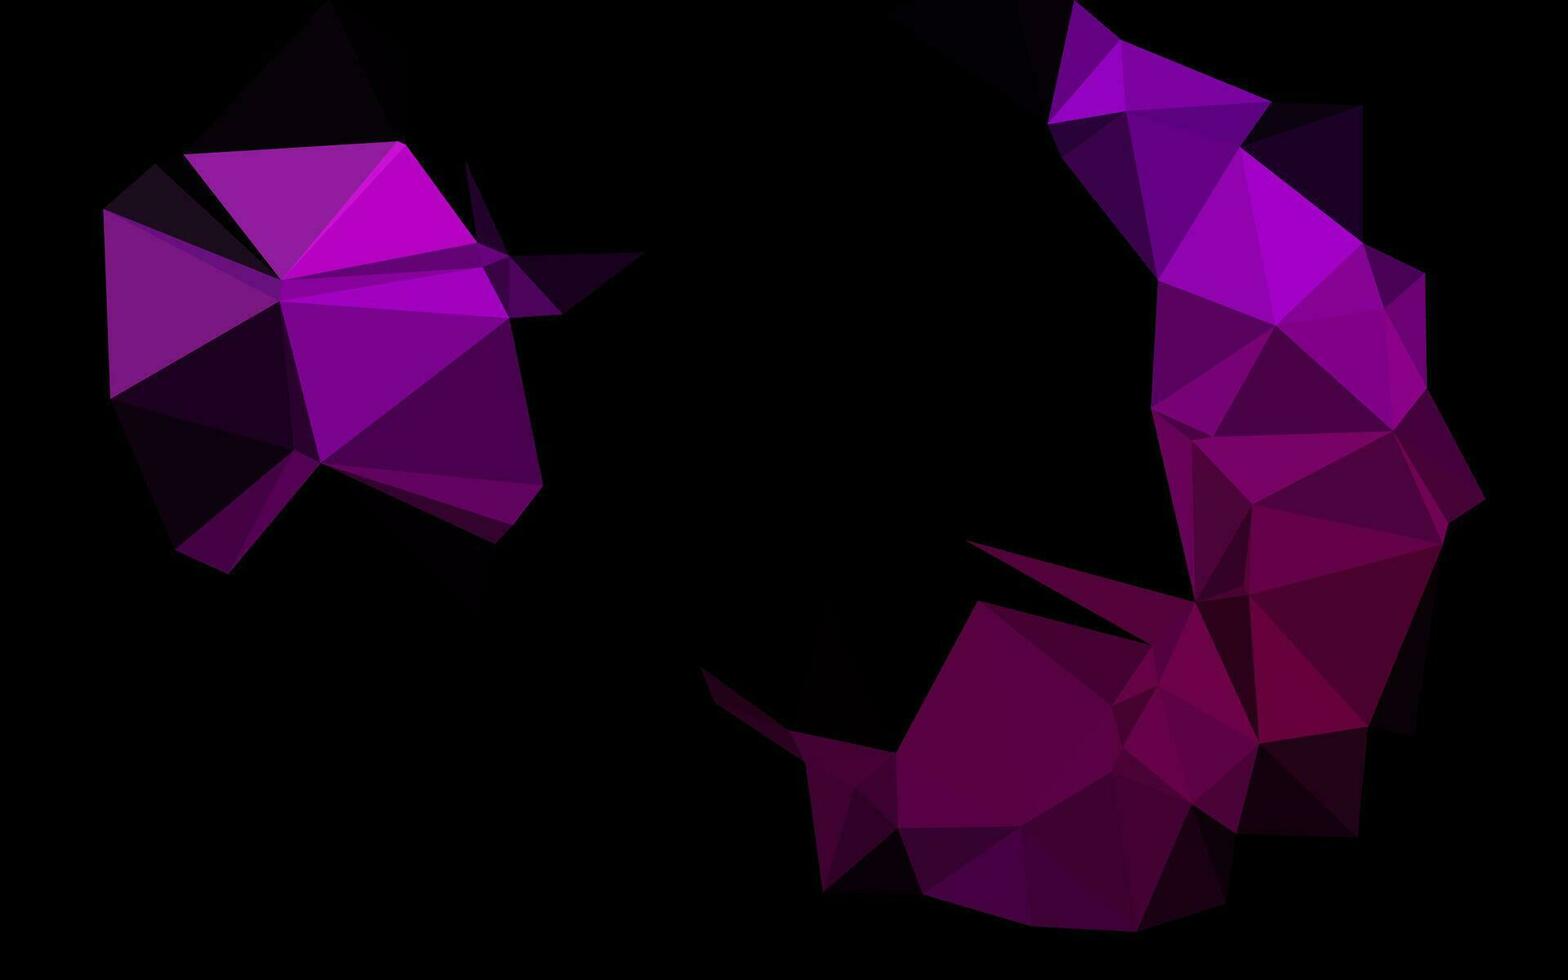 patrón poligonal de vector púrpura oscuro.